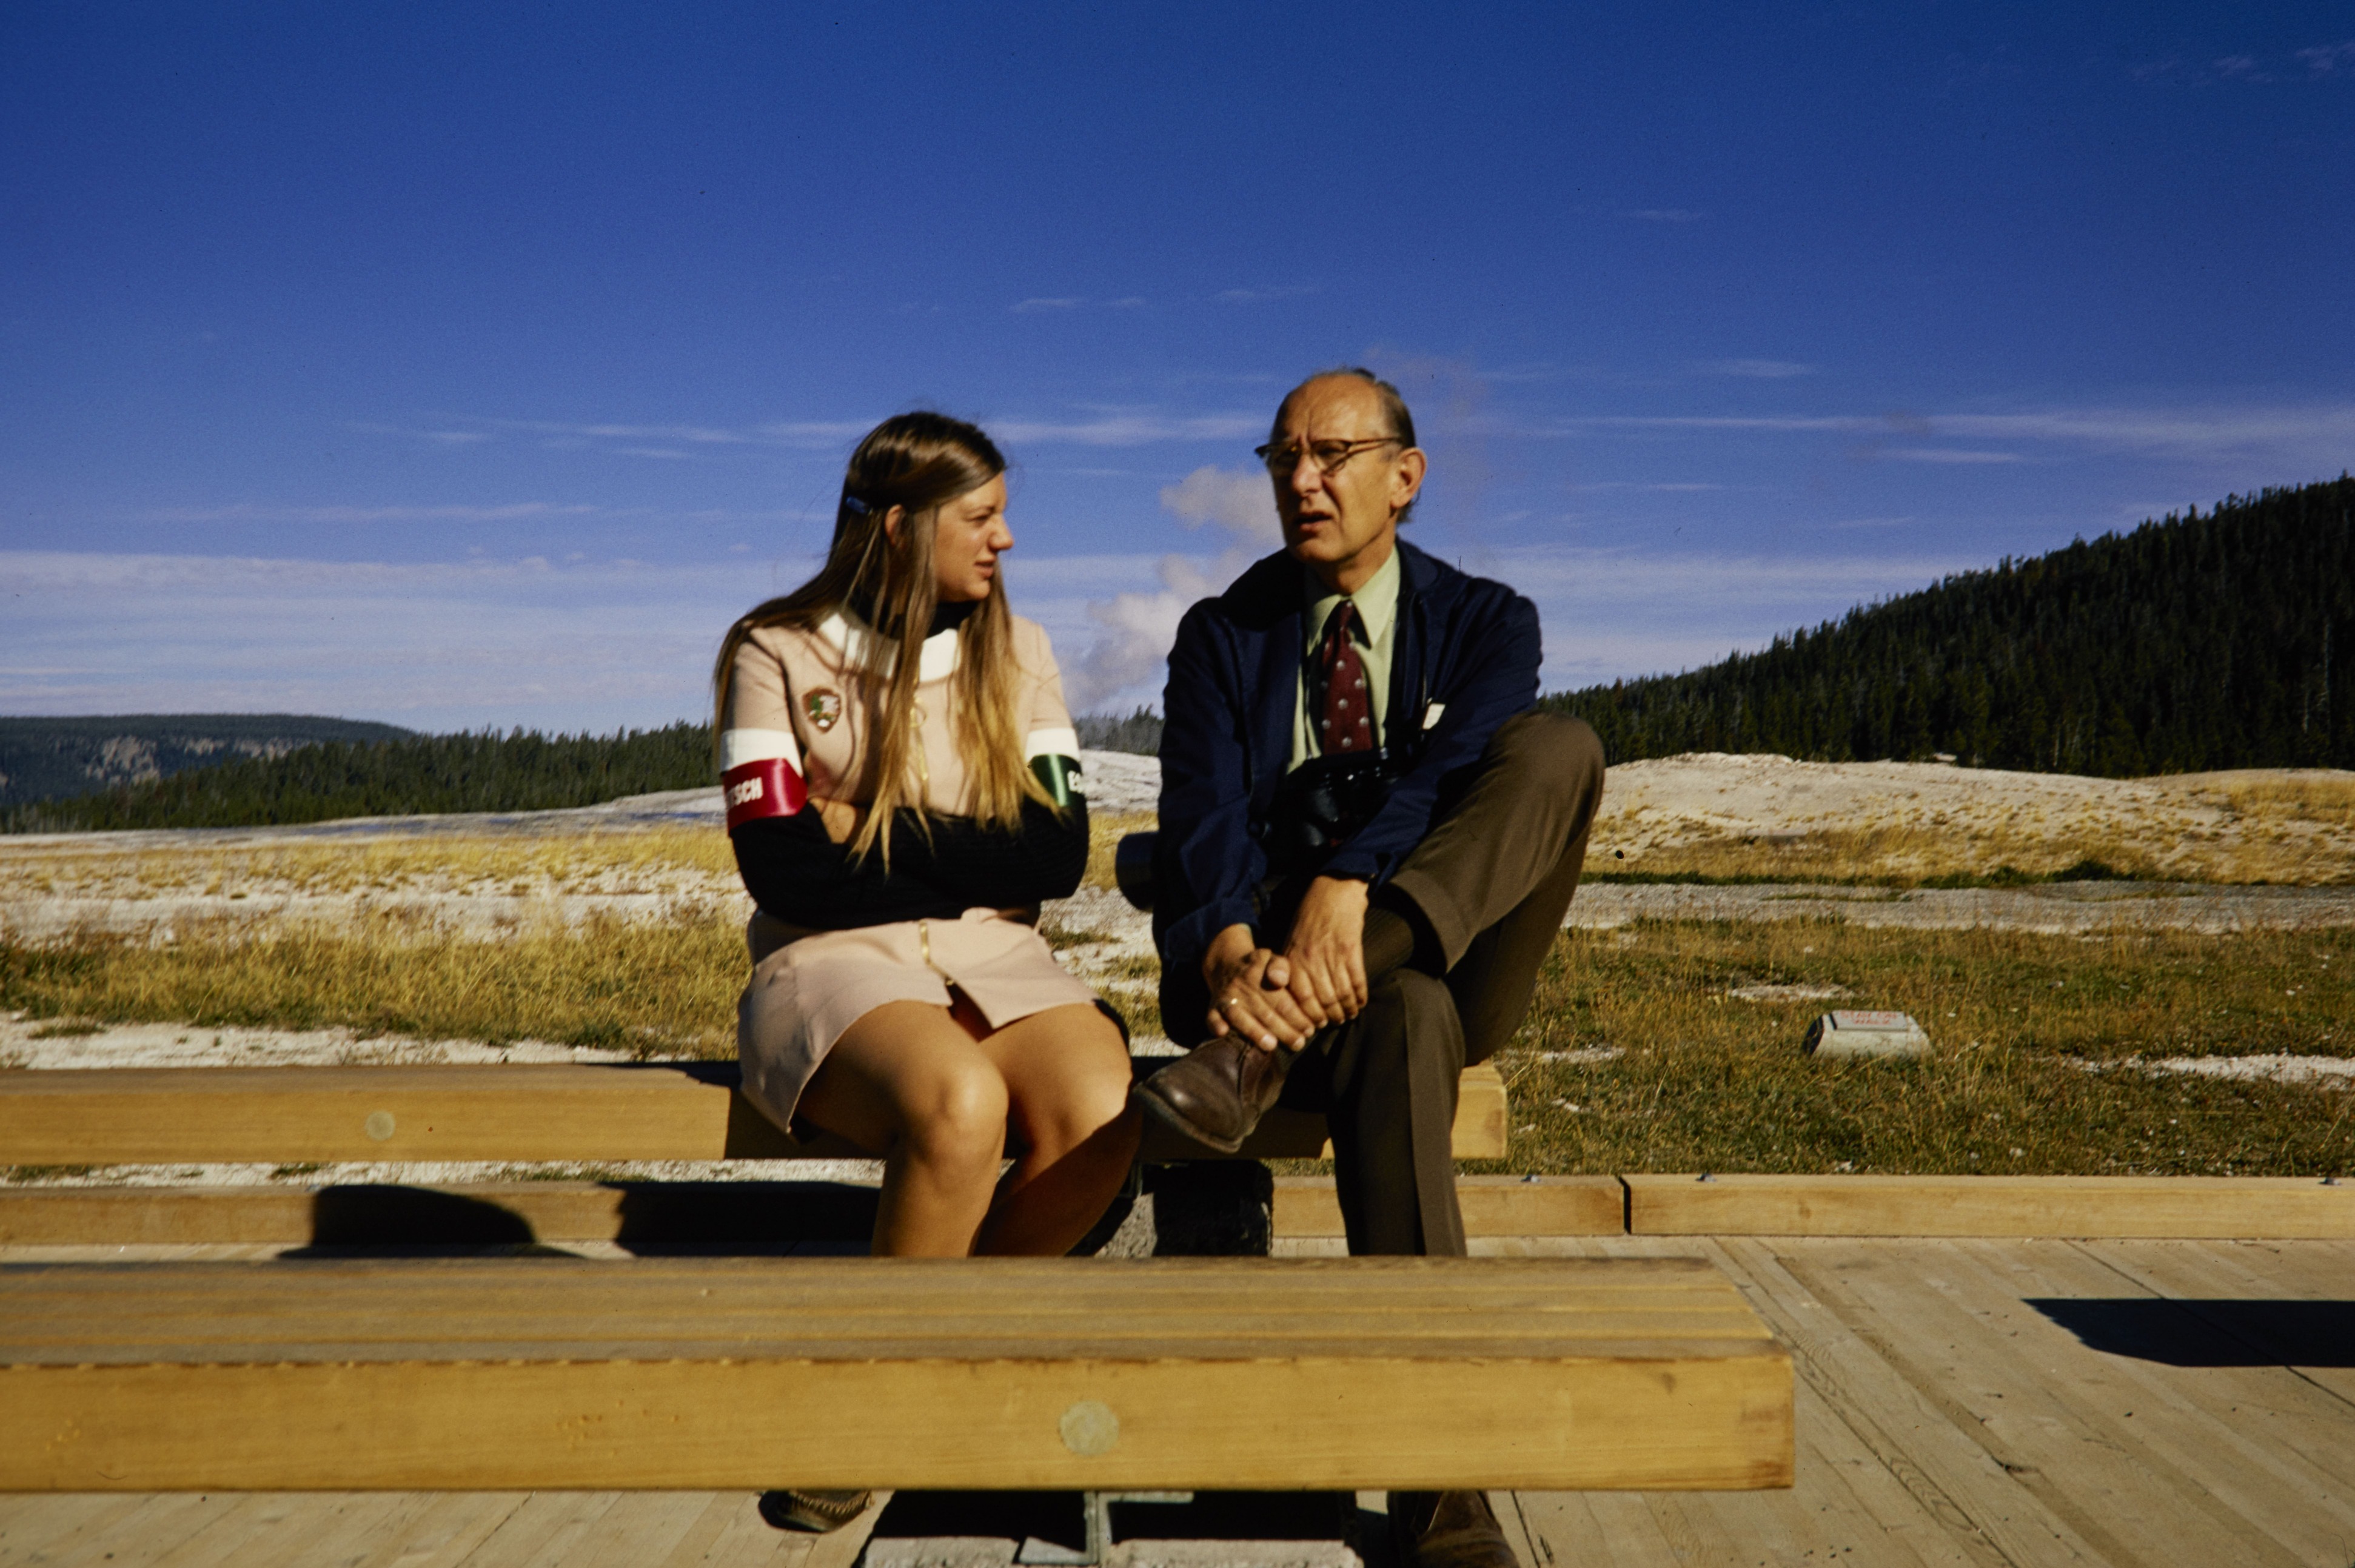 Woman in a beige NPS uniform dress sits on a bench talking a man in a suit.